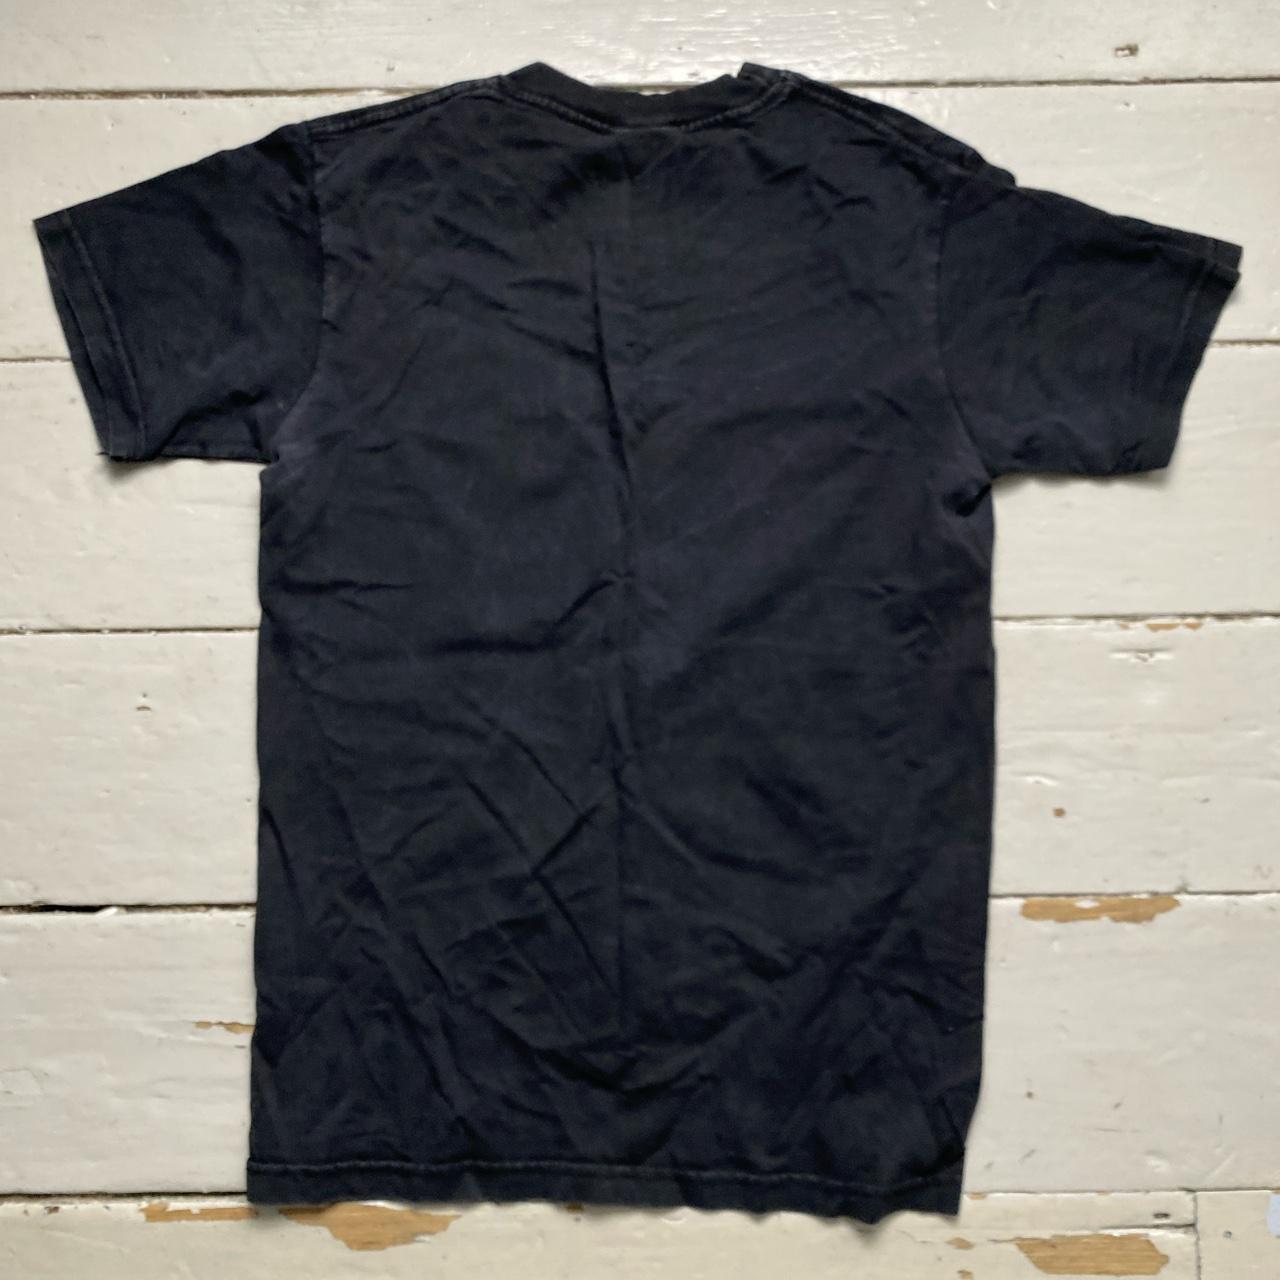 Viva Zapata Cabrones Black T Shirt